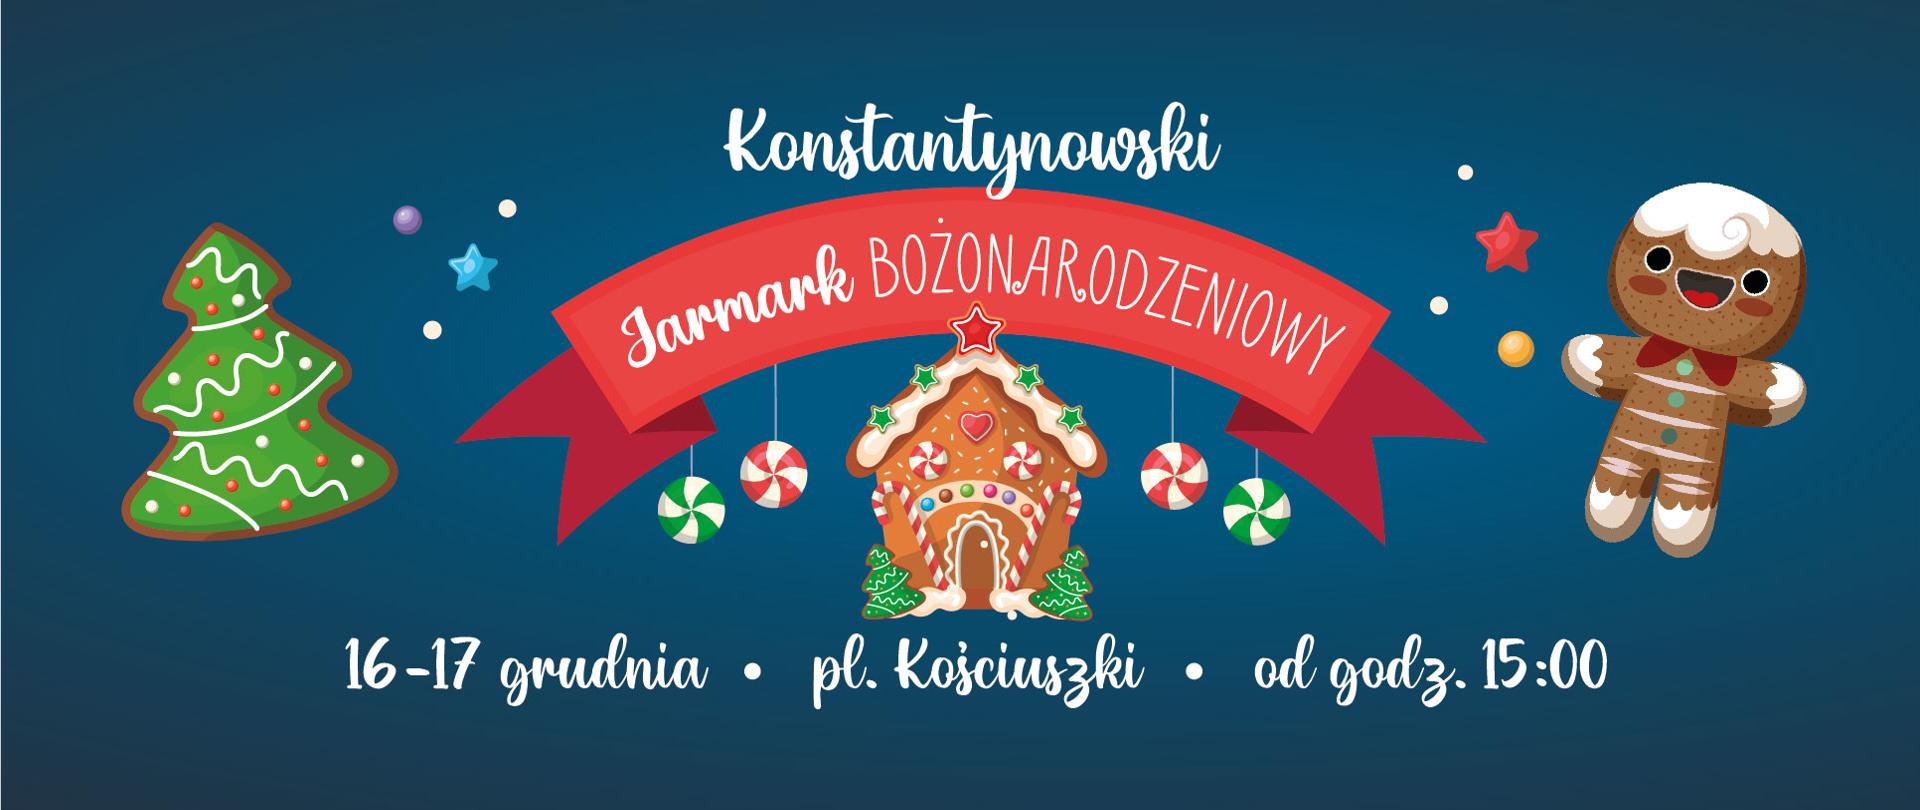 Zaproszenie na jarmark bożonarodzeniowy, granatowe tło, elementy graficzne, choinka i ciastek z piernika, domek z piernika. 16-17 grudnia, plac Kościuszki, od godziny 15.30.